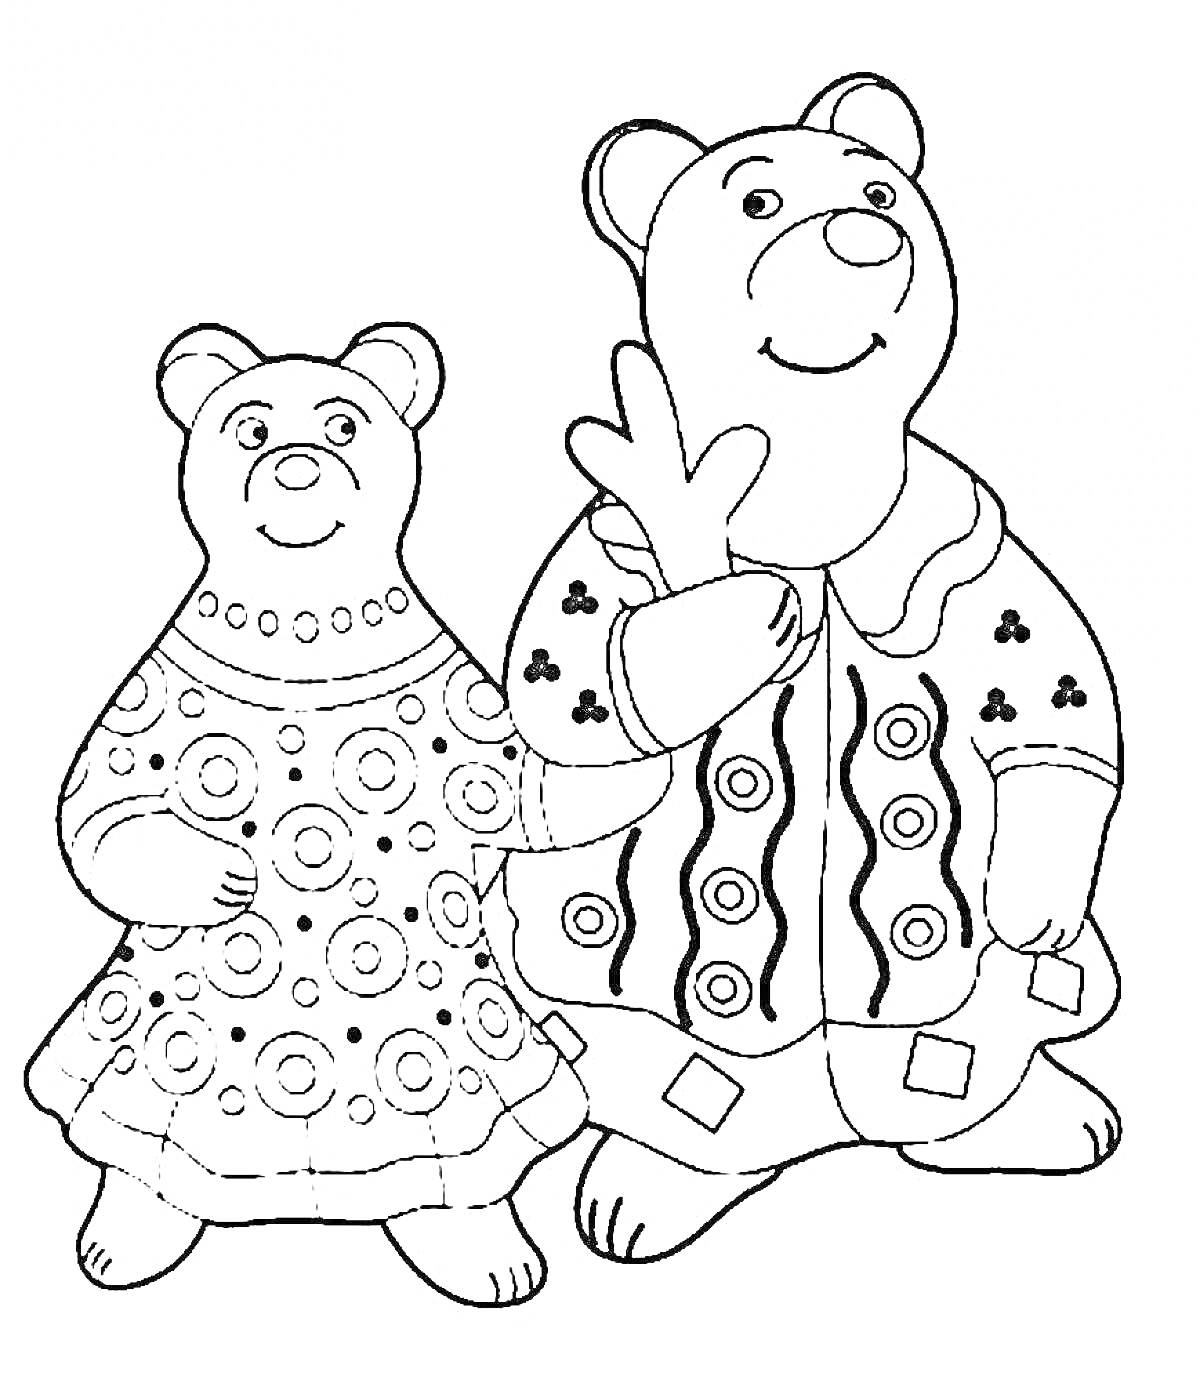 Раскраска Дымковская игрушка в виде двух медведей, одетых в традиционные наряды с узорами